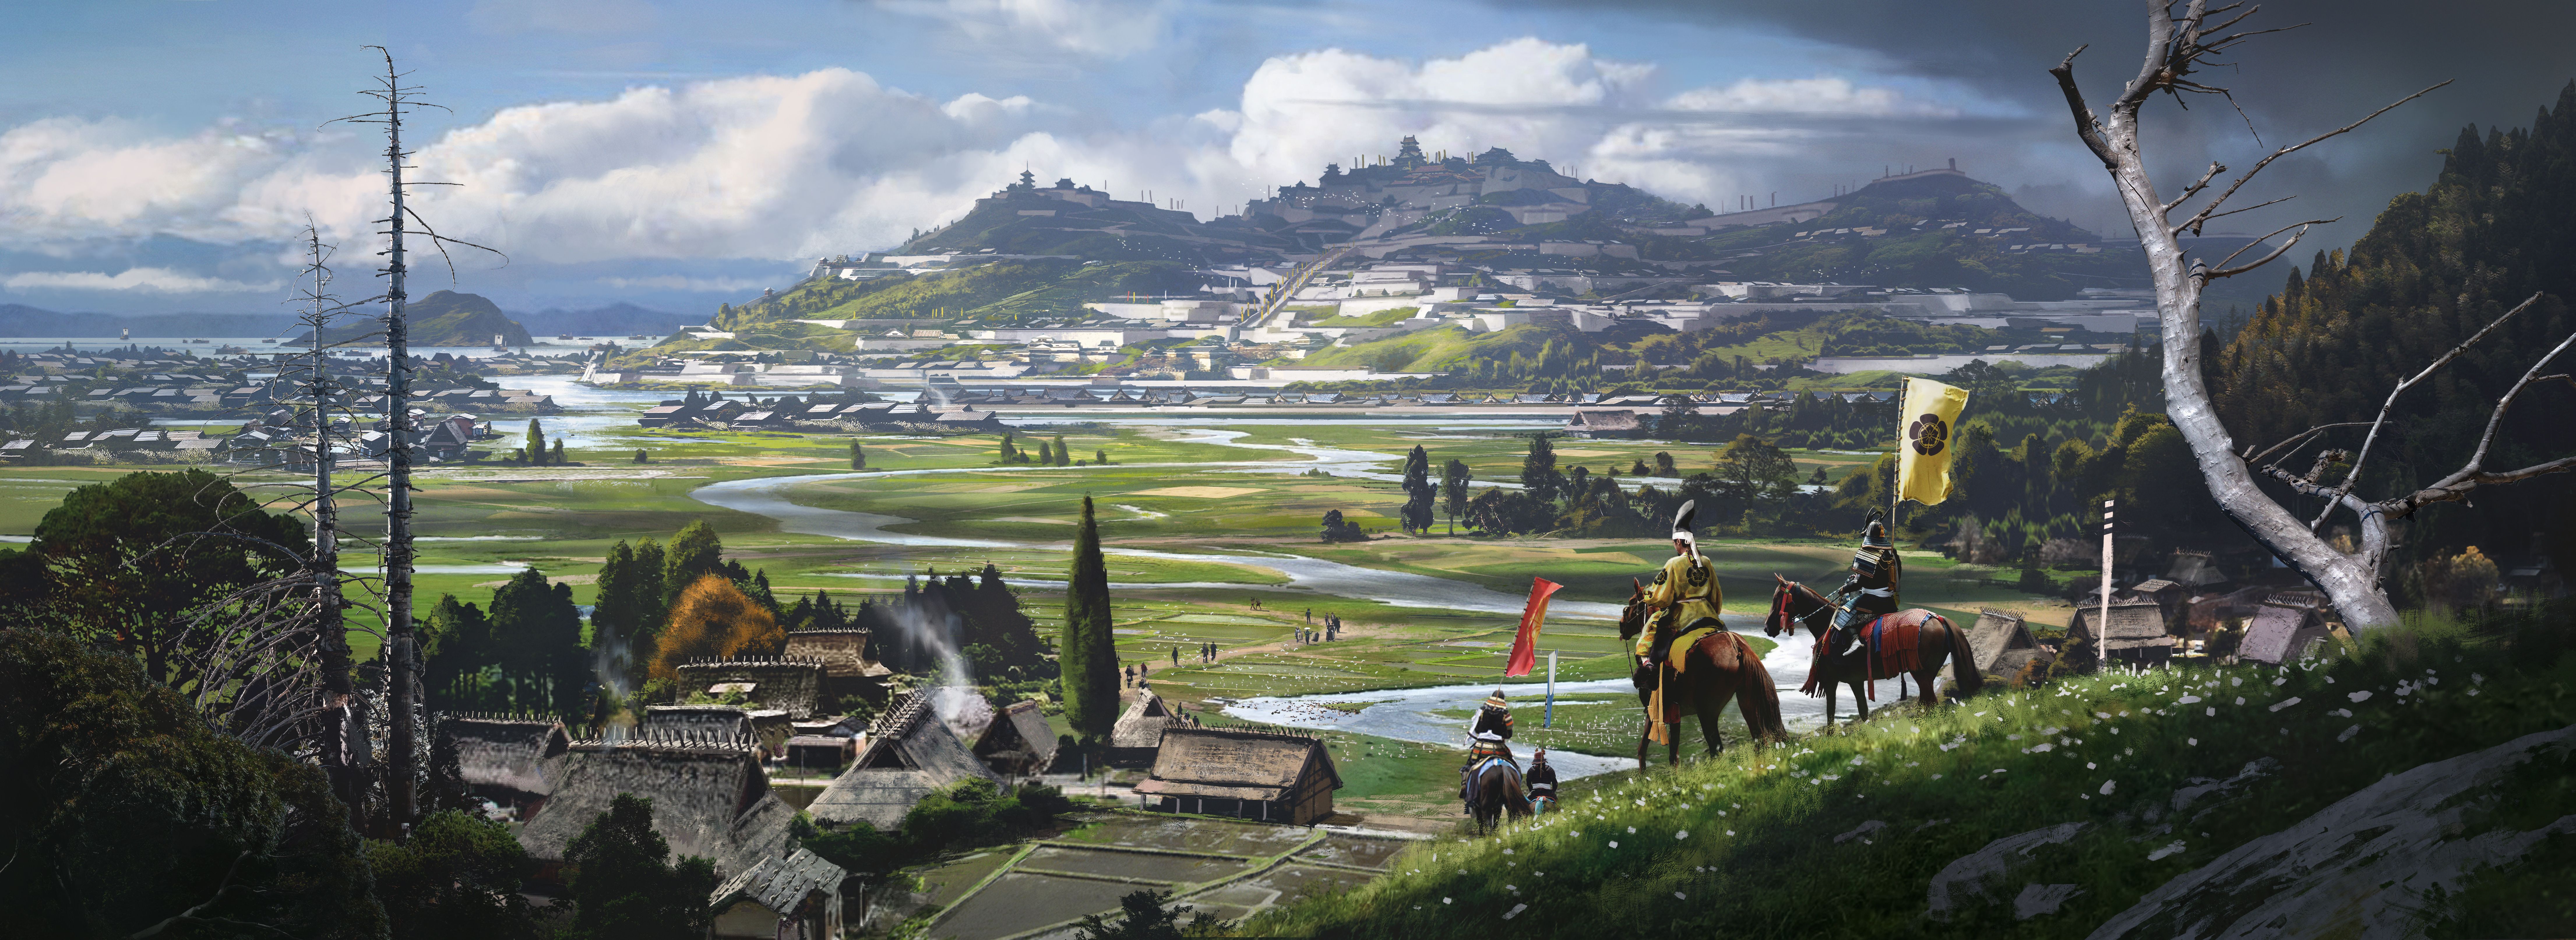 Assassin's Creed Shadows позволяет игрокам играть за двух уникальных персонажей